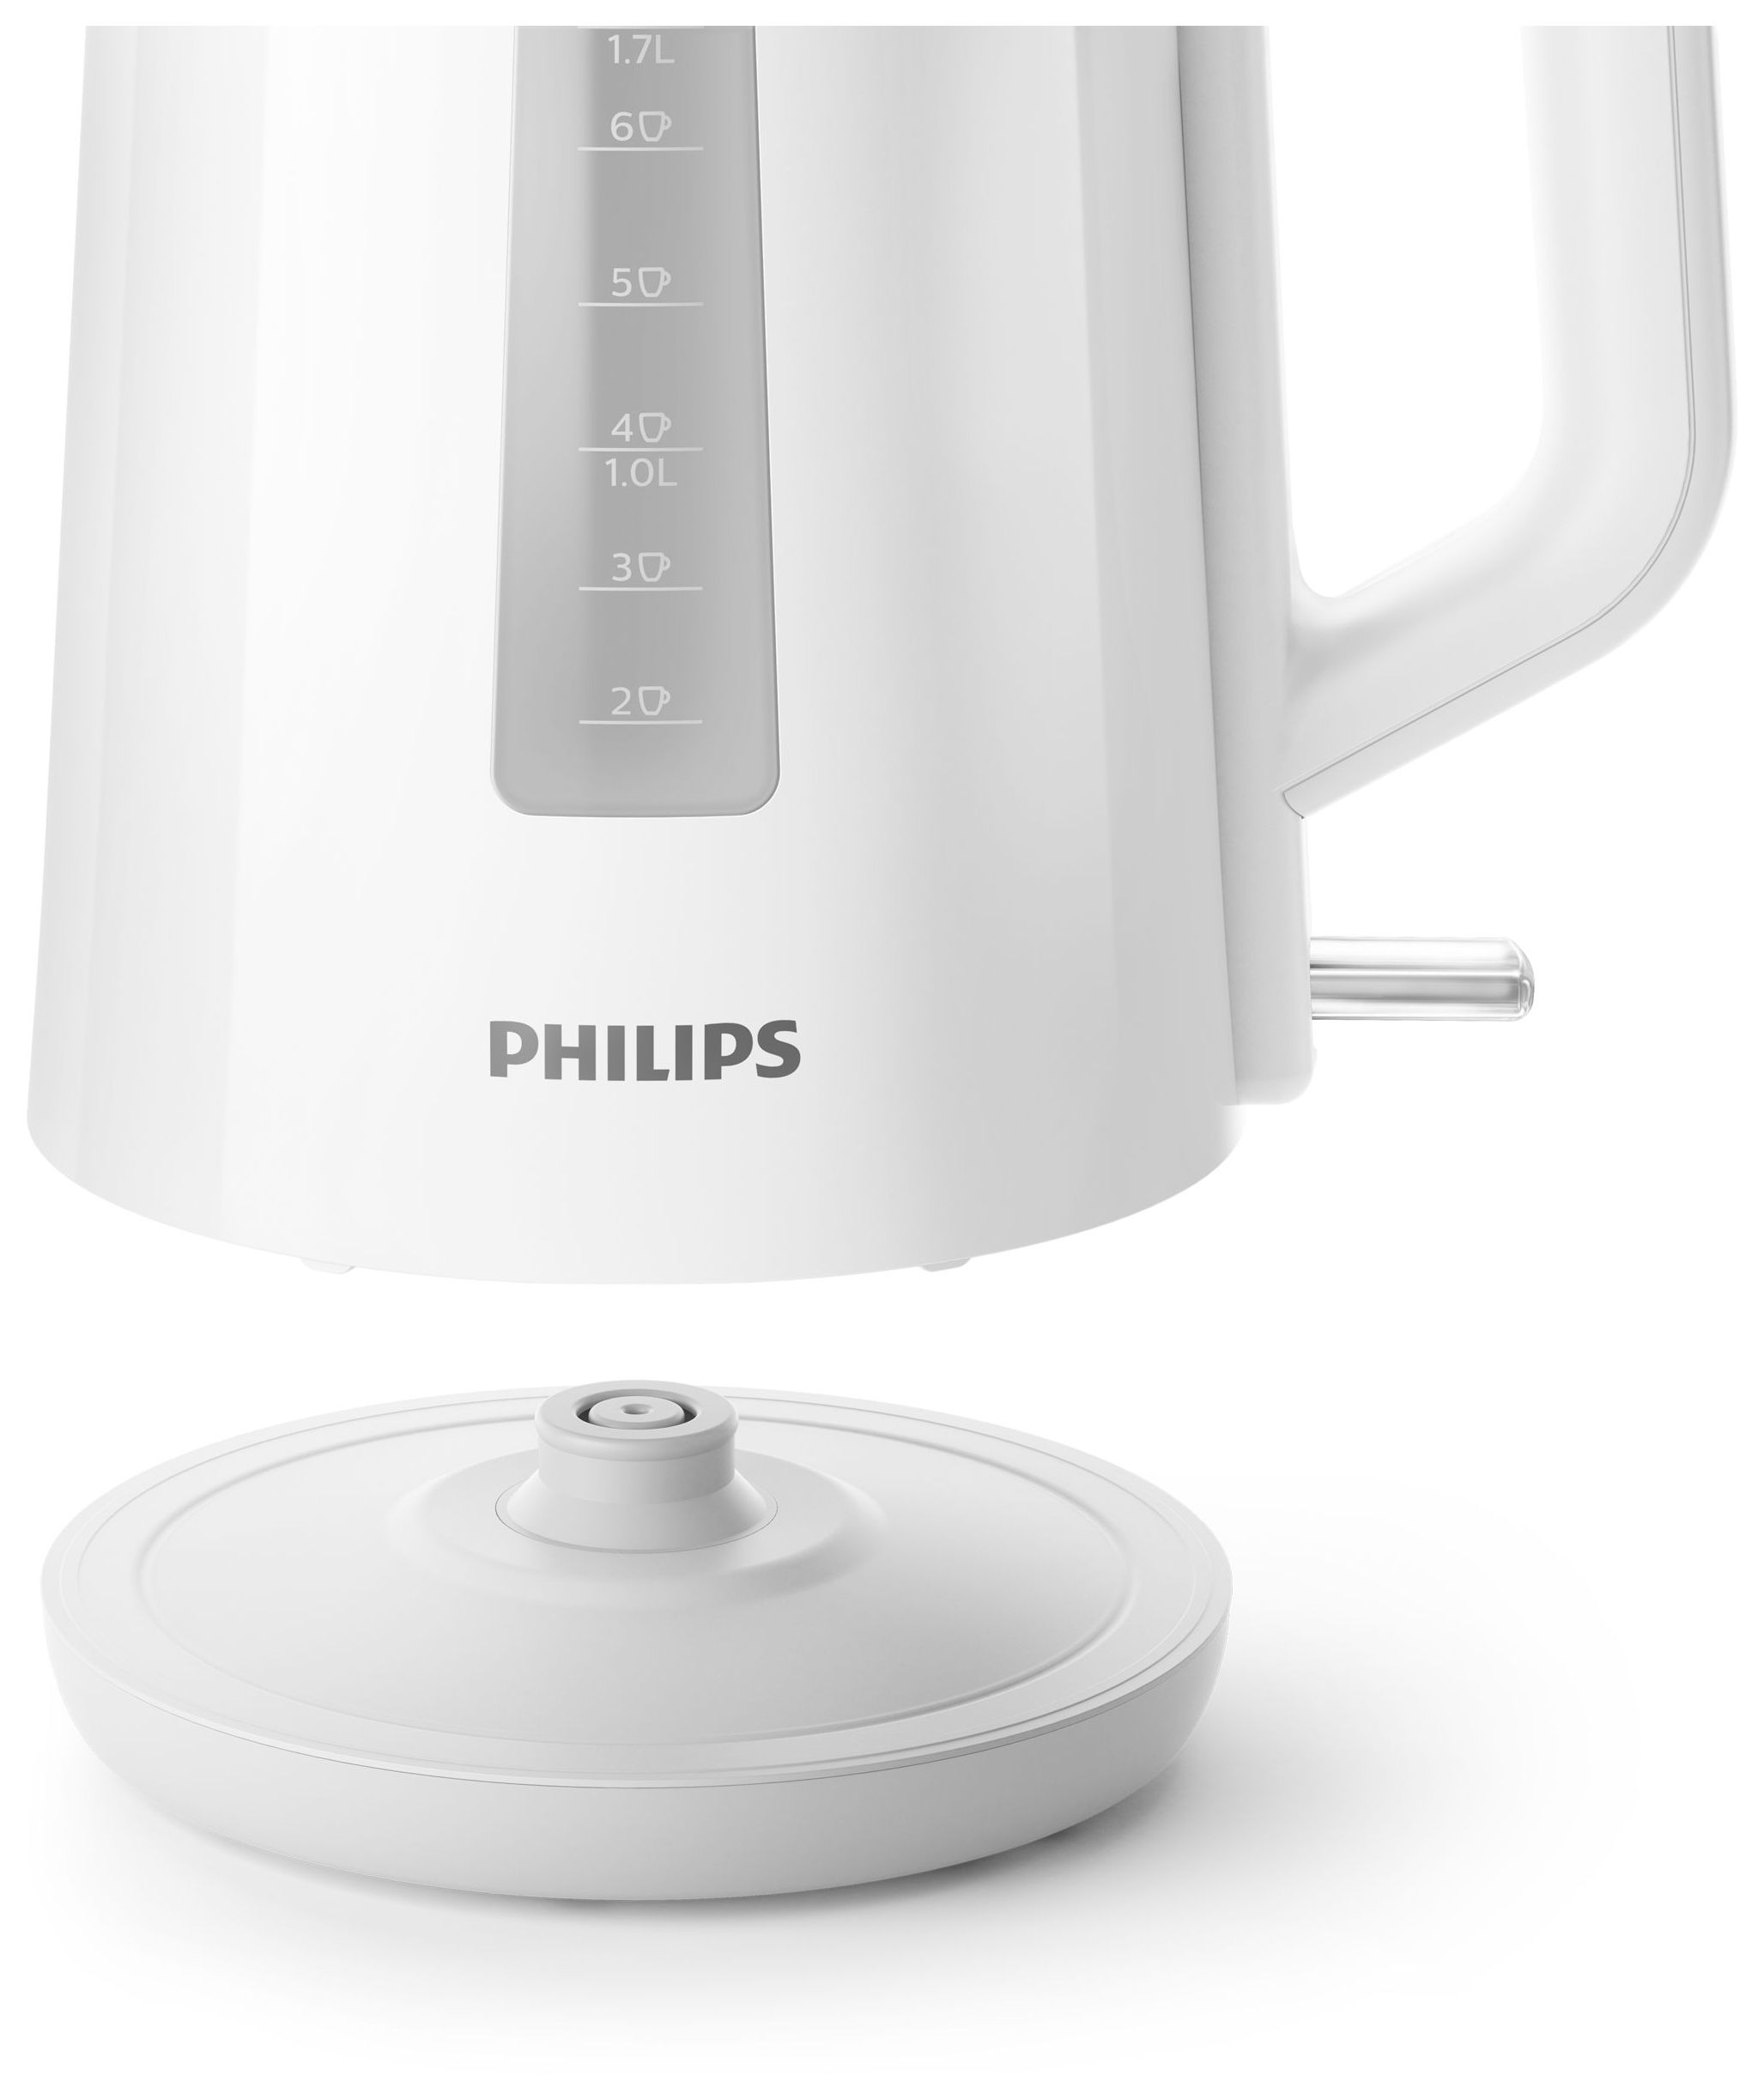 Philips 3000 series HD9318/00 1,7 Technomarkt l 2200 Wasserkocher (Weiß) W expert von